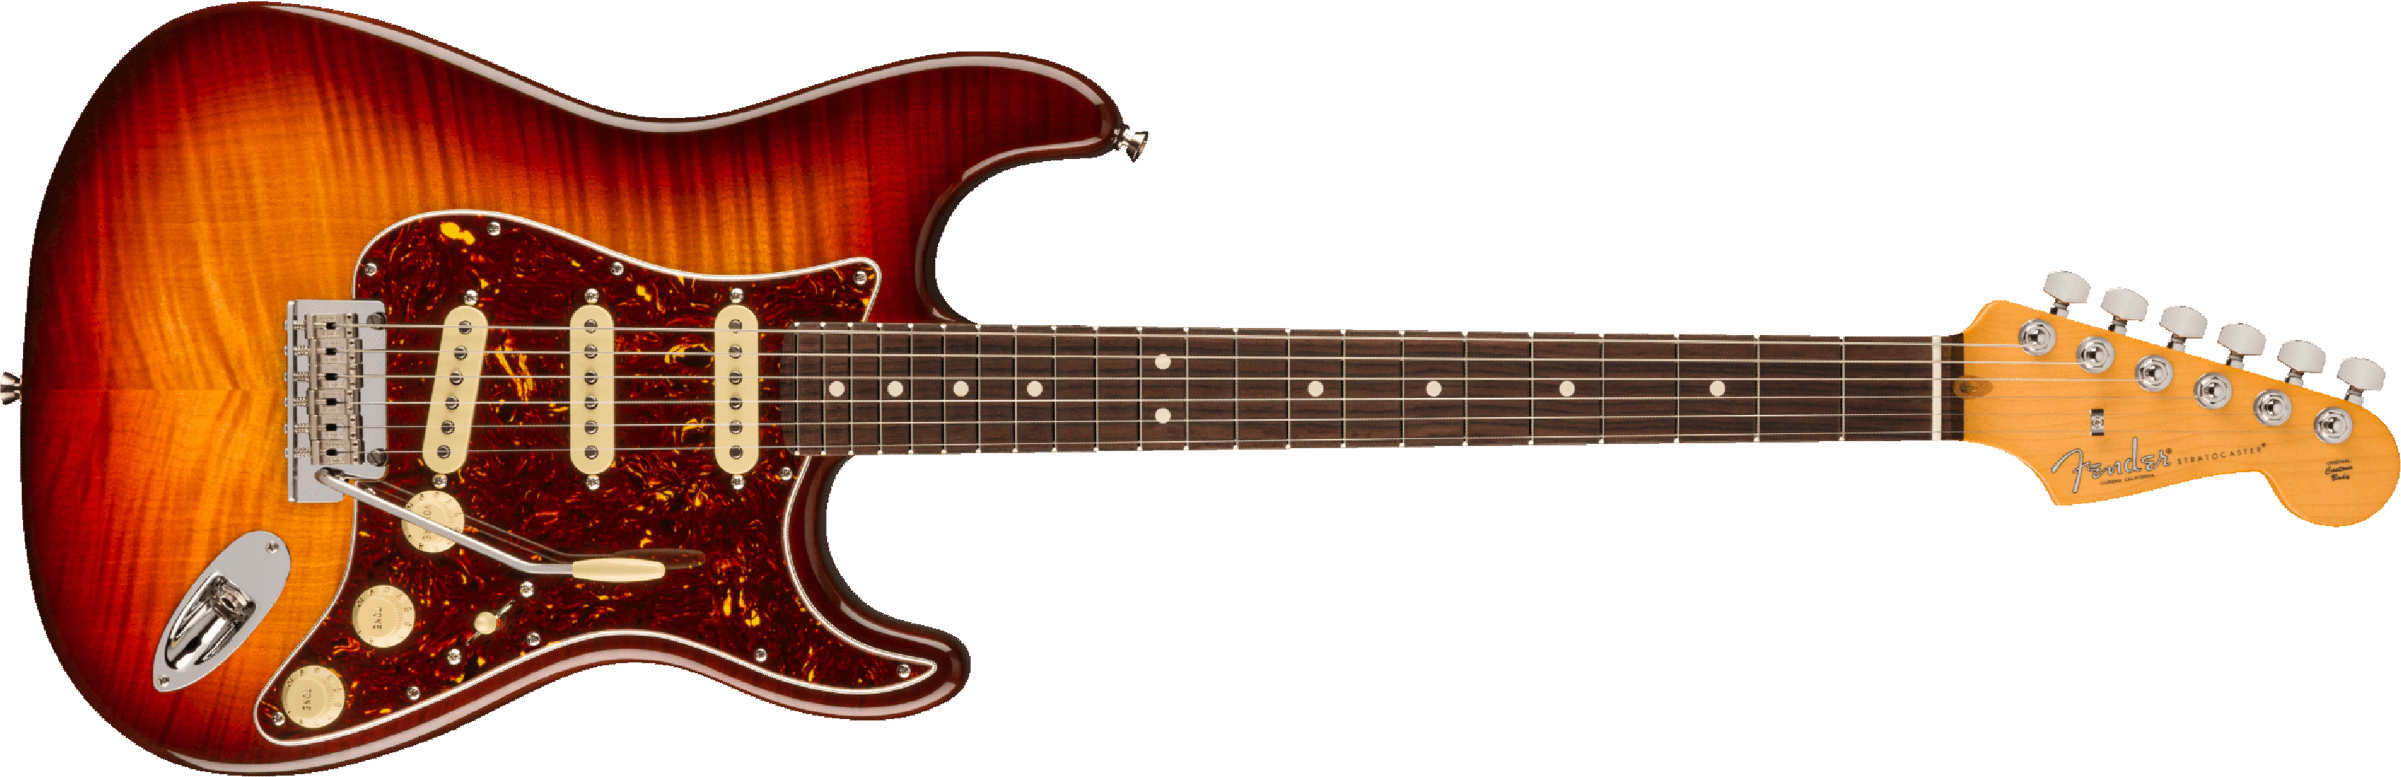 Fender Stratocaster American Pro Ii 70th Anniversary 3s Trem Mn - Comet Burst - E-Gitarre in Str-Form - Main picture